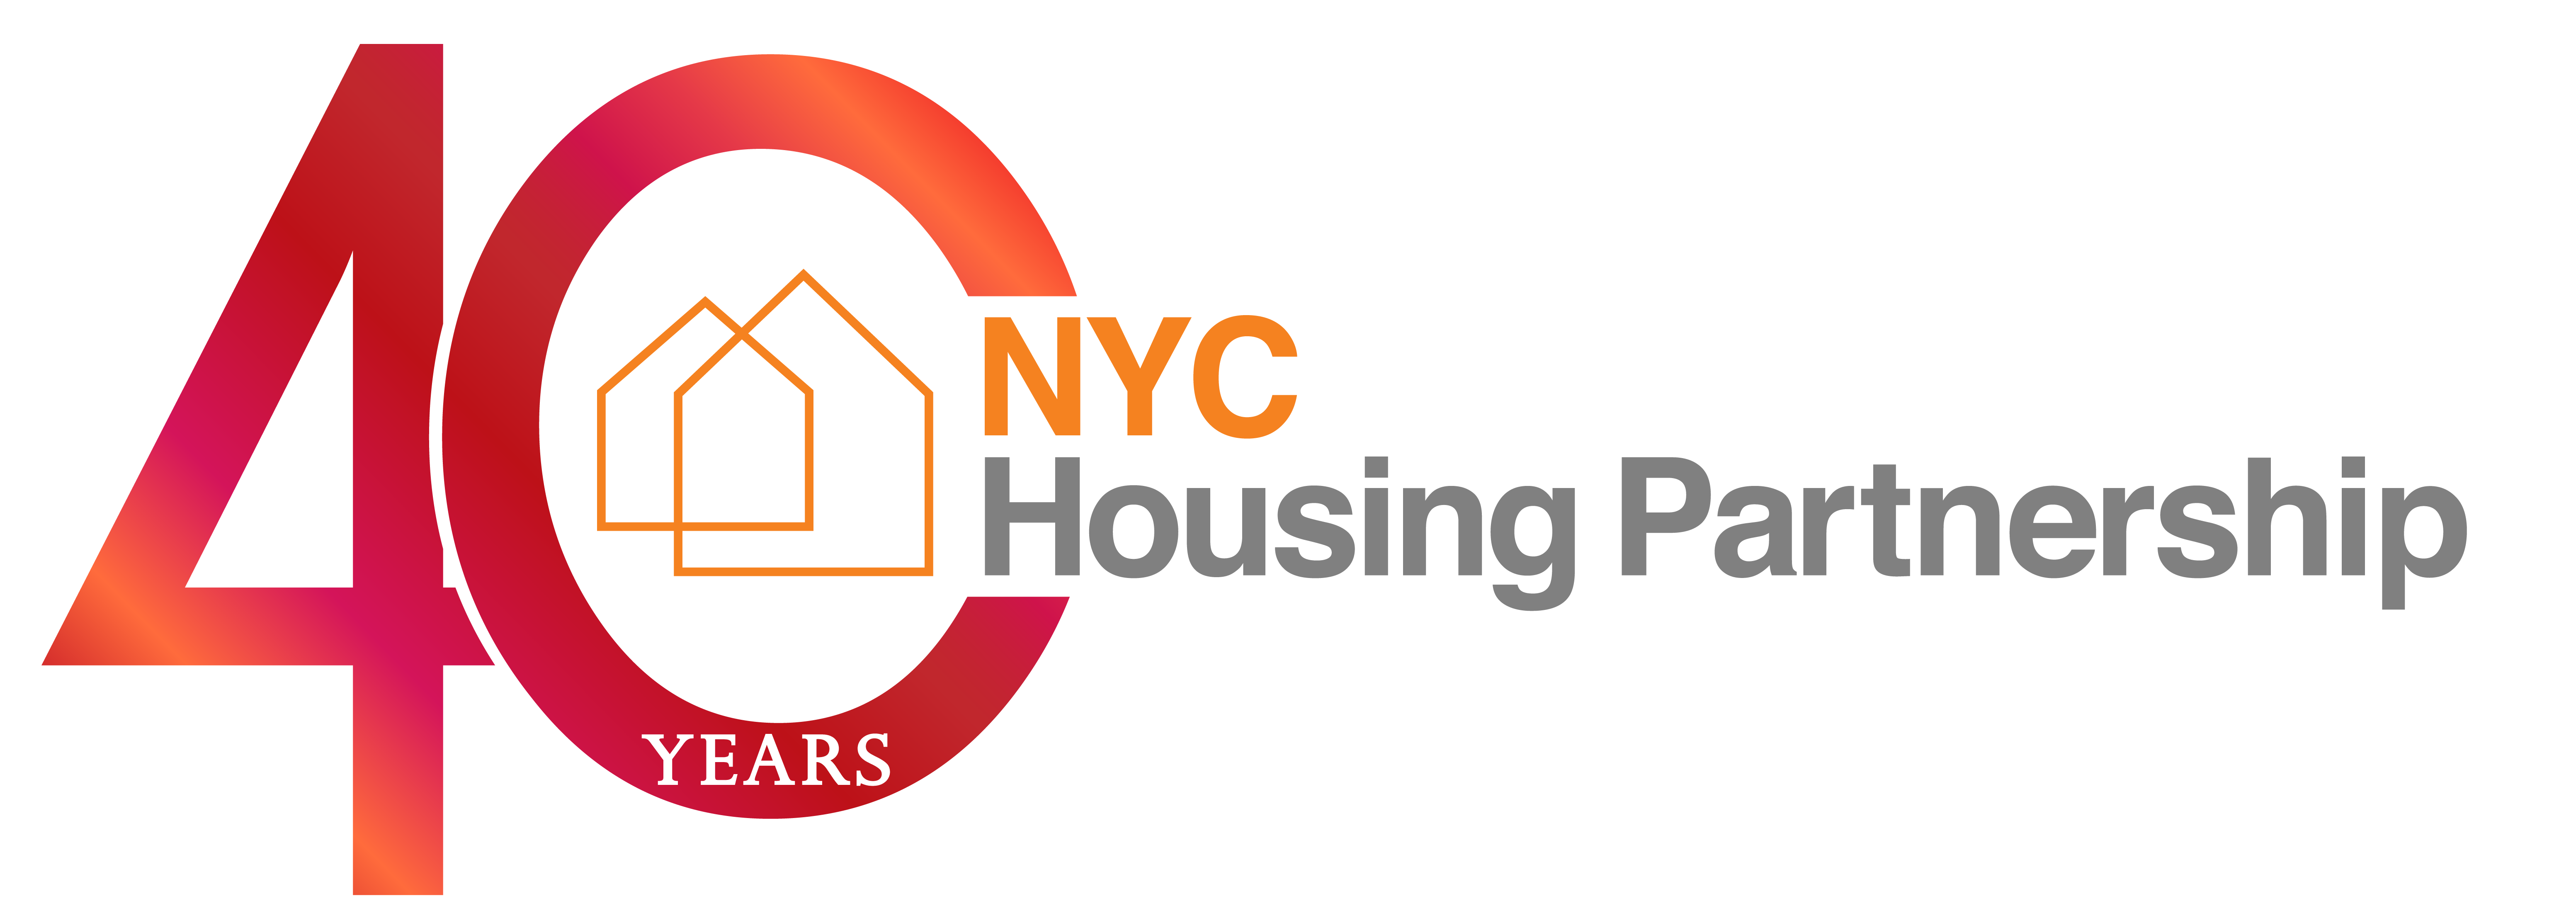 NYC Housing Partnership - Celebrating 40 Years